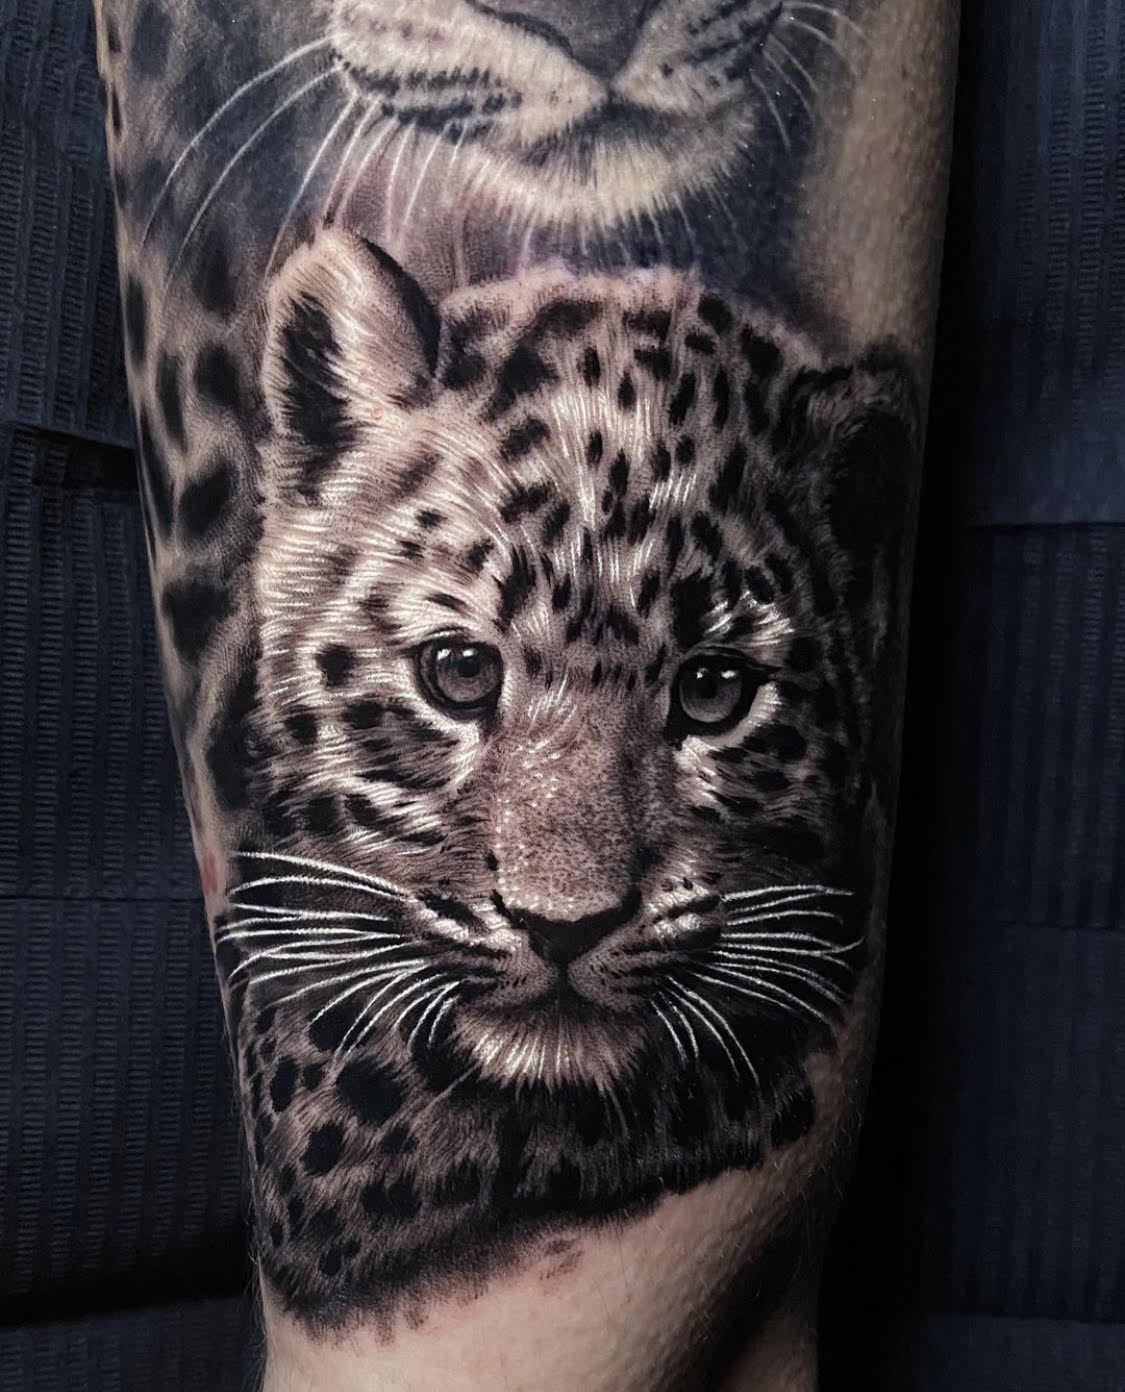 Leopard tattoos